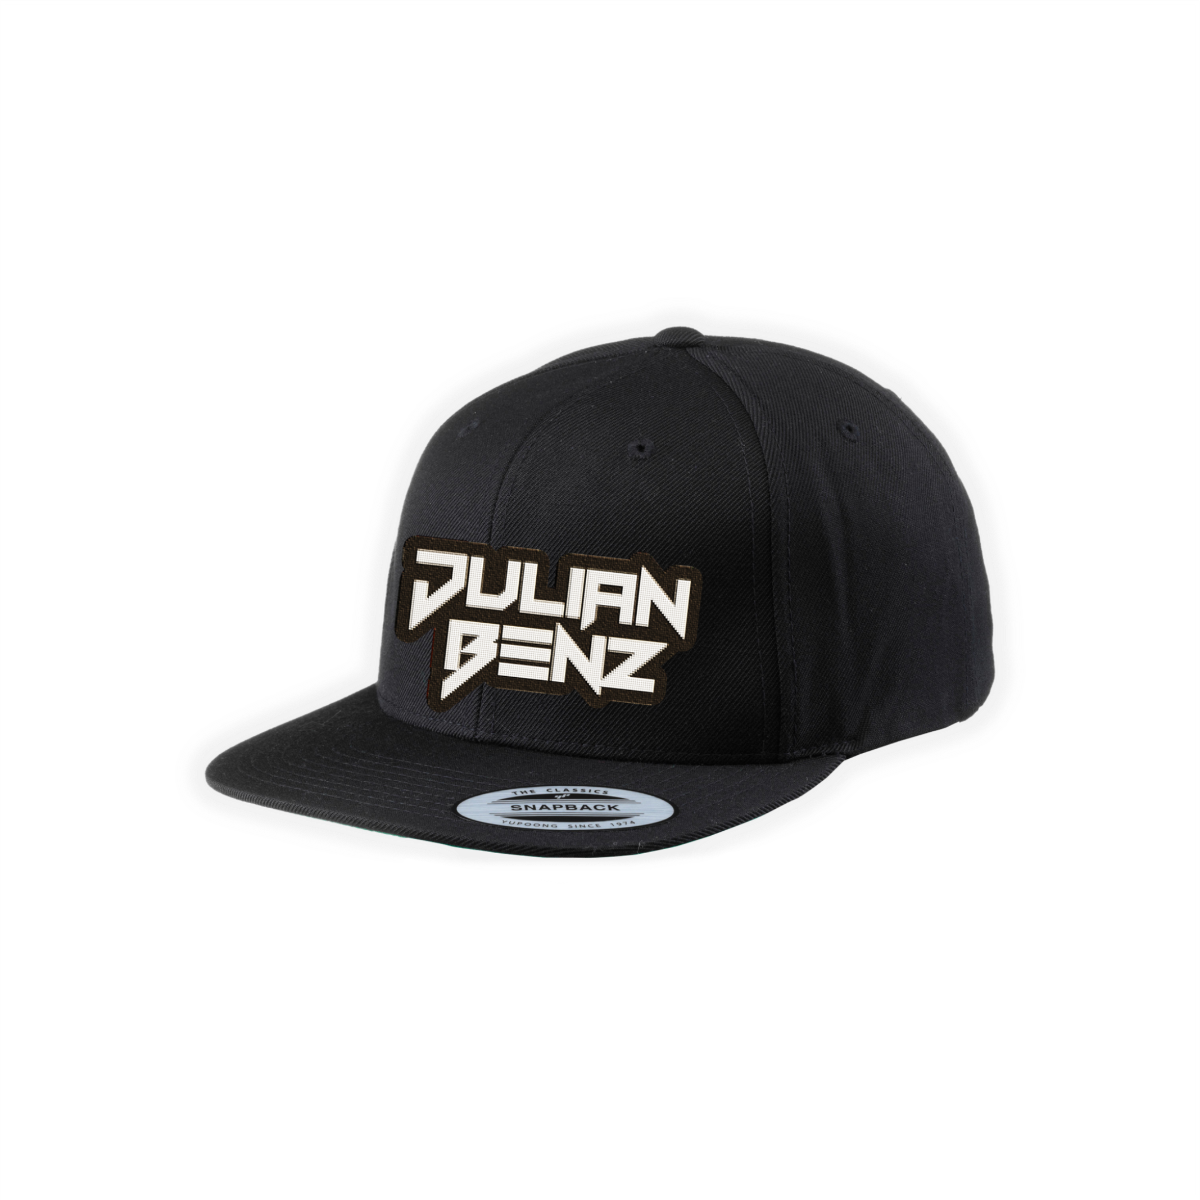 Cap "JULIAN BENZ Logo" schwarz, bestickt